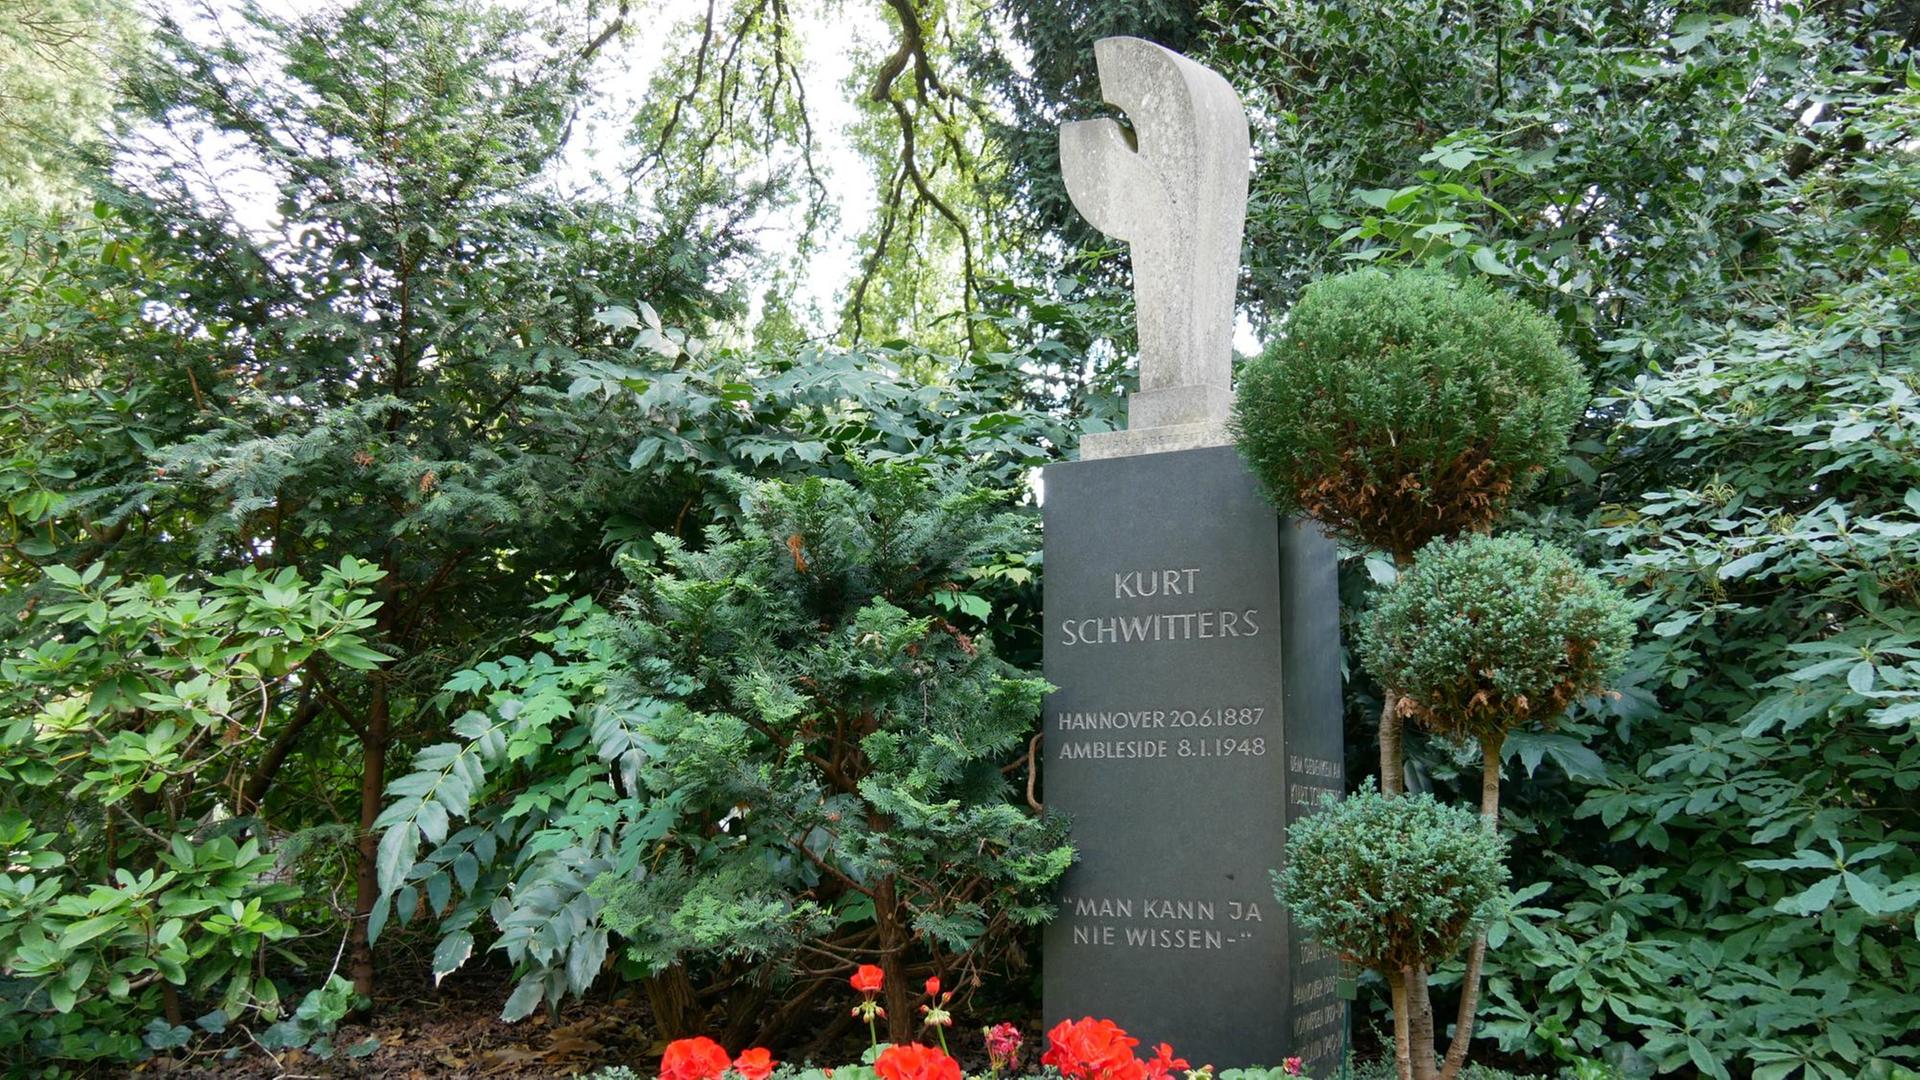 Kunst statt religiöser Symbole - das Grab von Kurt Schwitters auf dem Stadtfriedhof Engesohde in Hannover